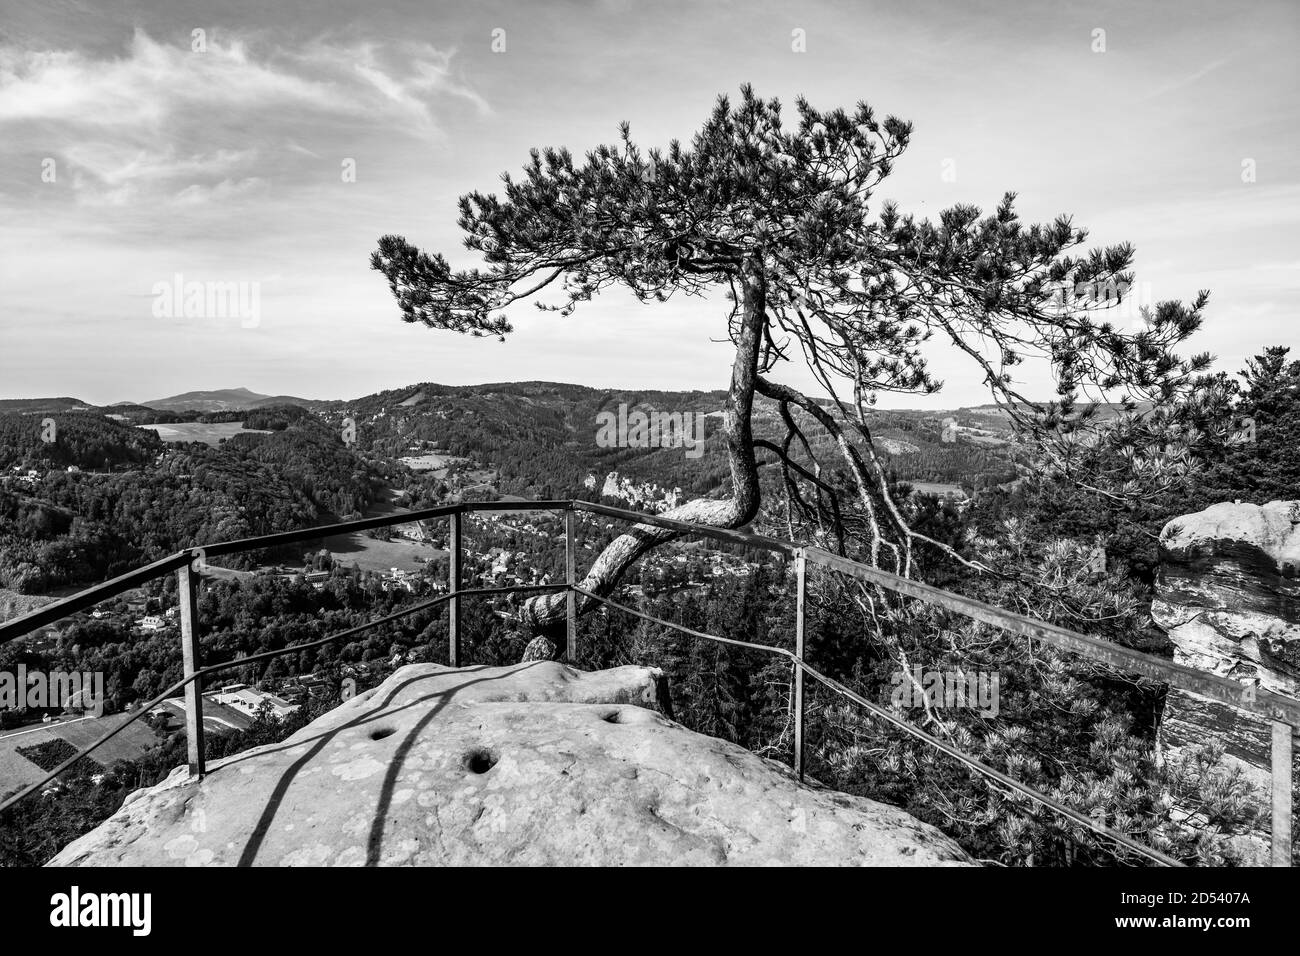 Point de vue de Husnik sur le sommet de la formation de roche de grès. Besedice Rocks dans Bohemian Paradise, Tchèque: Cesky raj, République Tchèque. Image en noir et blanc. Banque D'Images